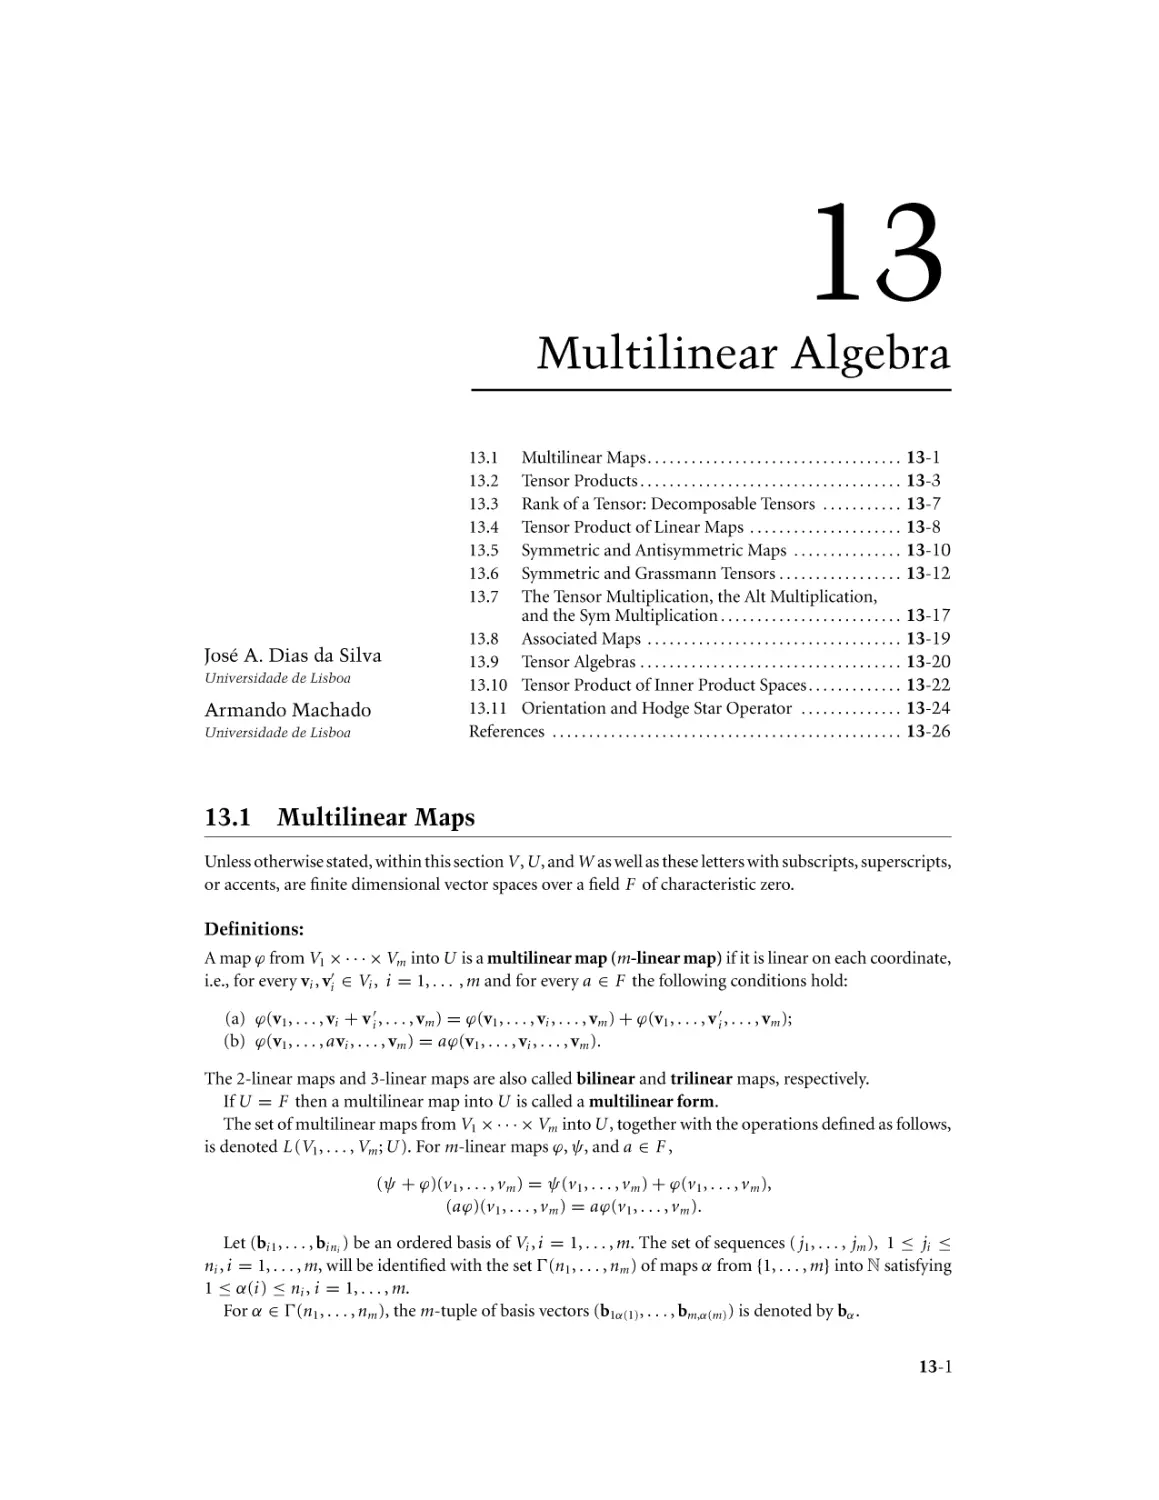 Chapter 13. Multilinear Algebra